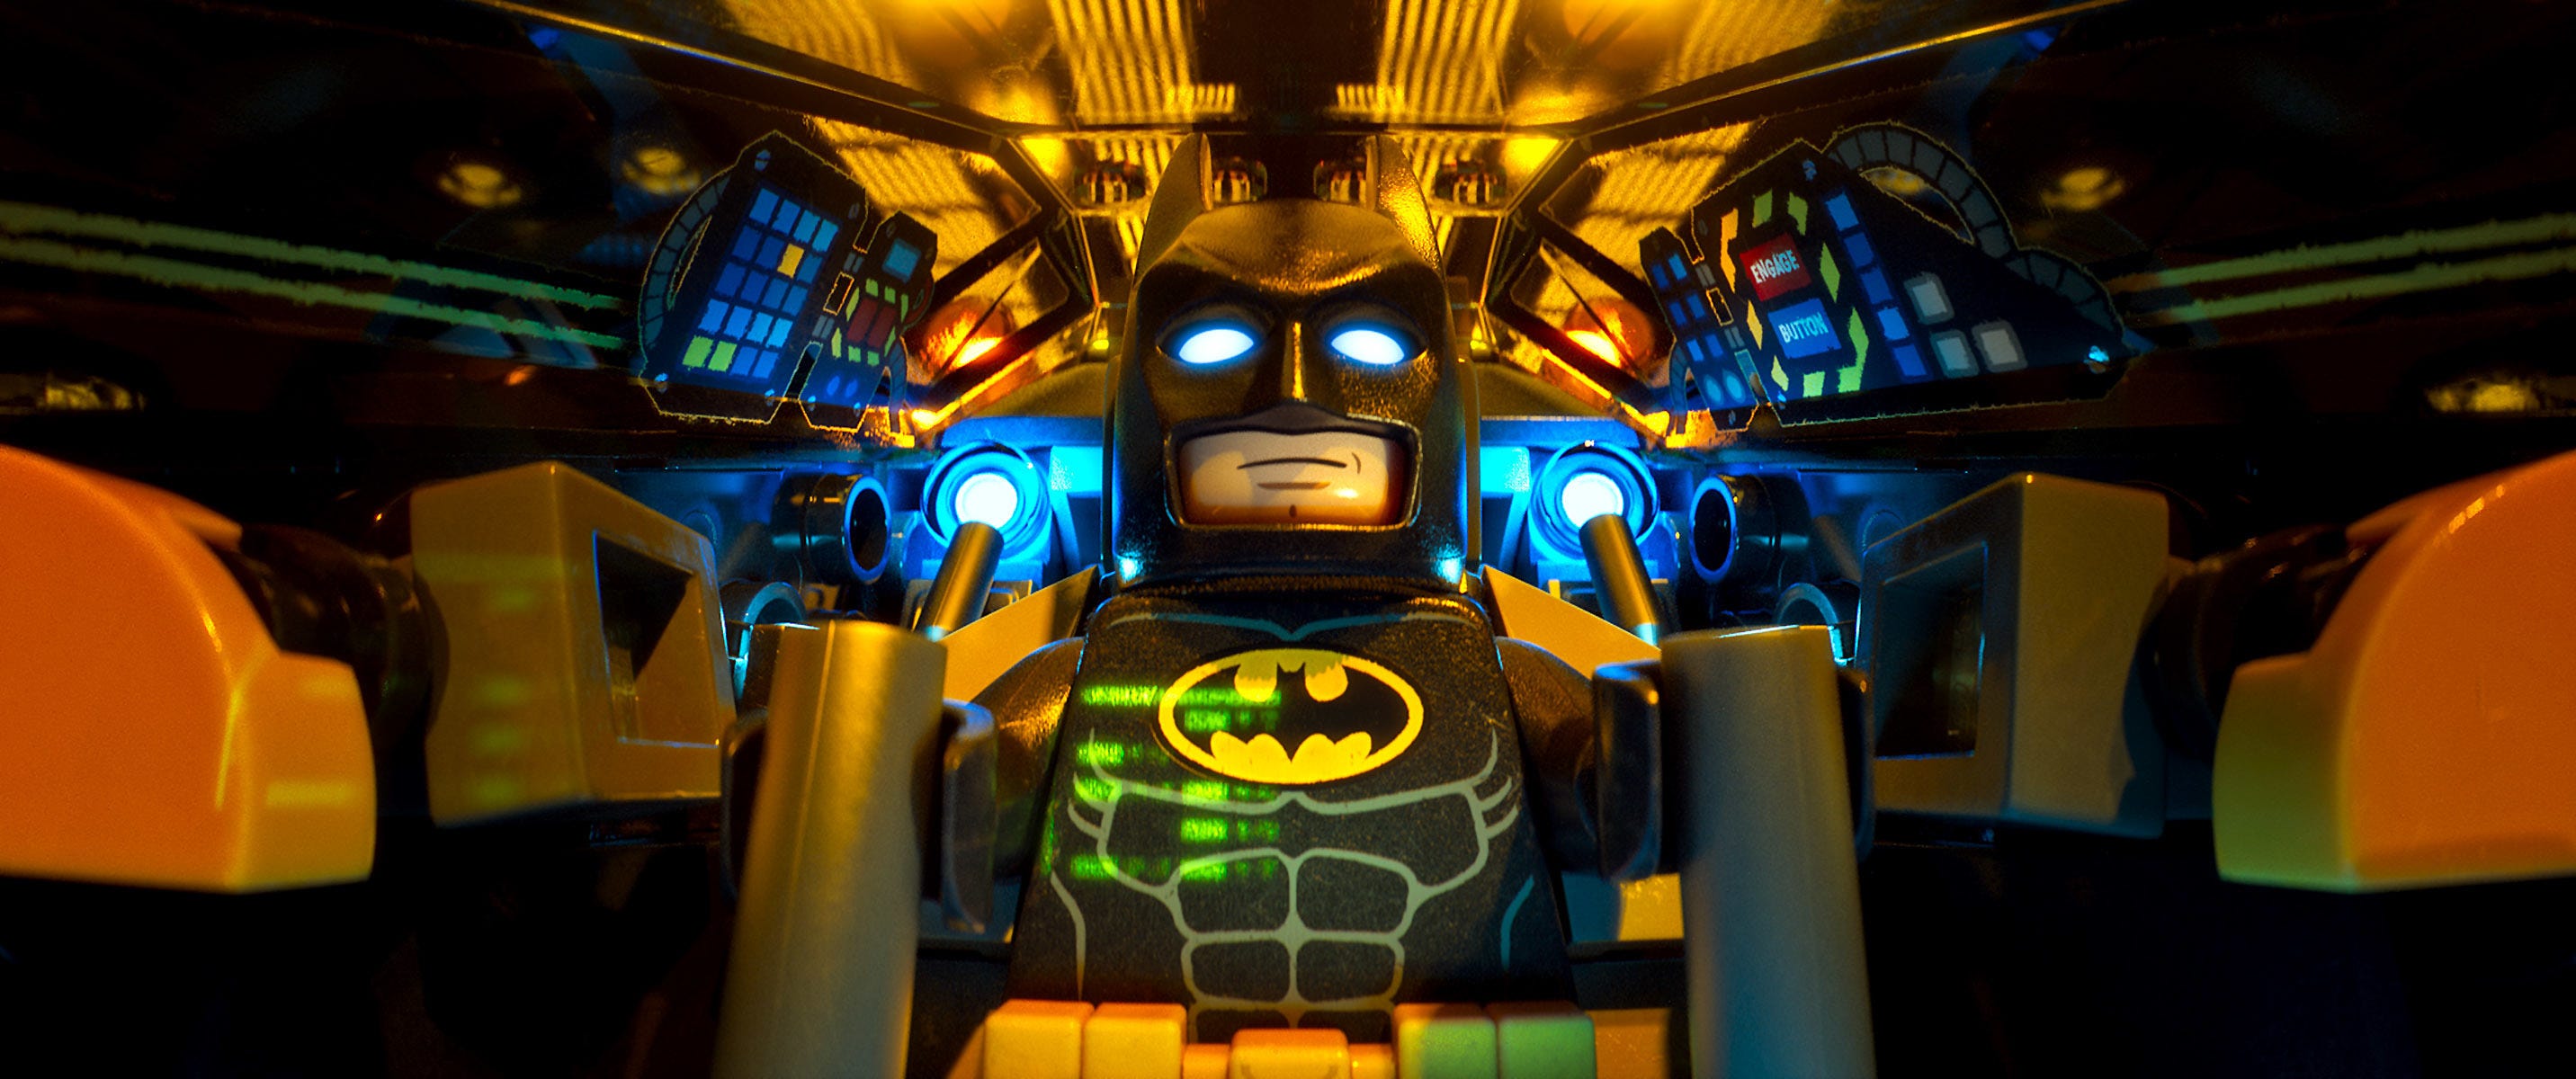 Movie review: 'LEGO Batman' has some laughs, but lacks depth